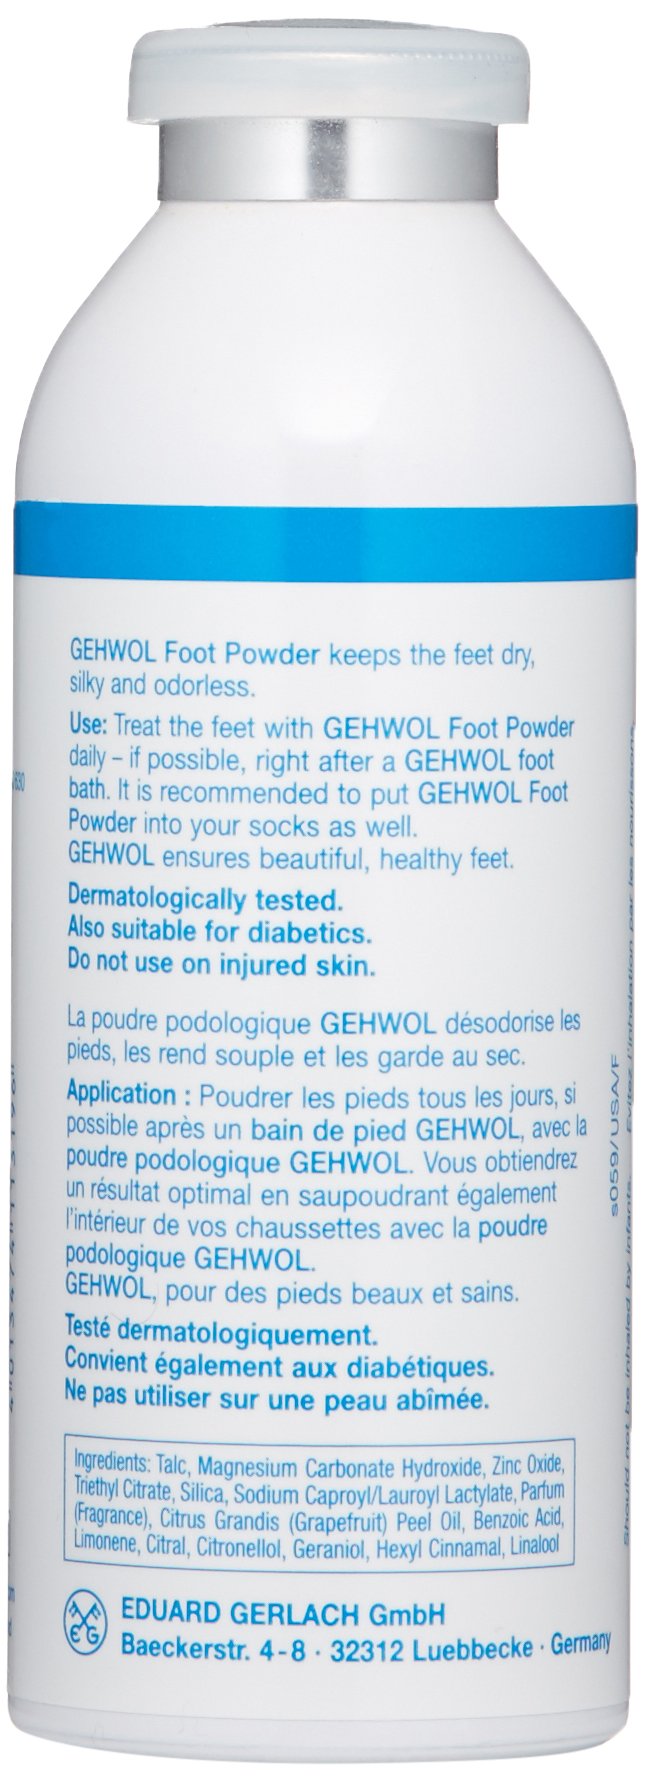 [Australia] - Gehwol Foot Powder, 3.5 Oz 